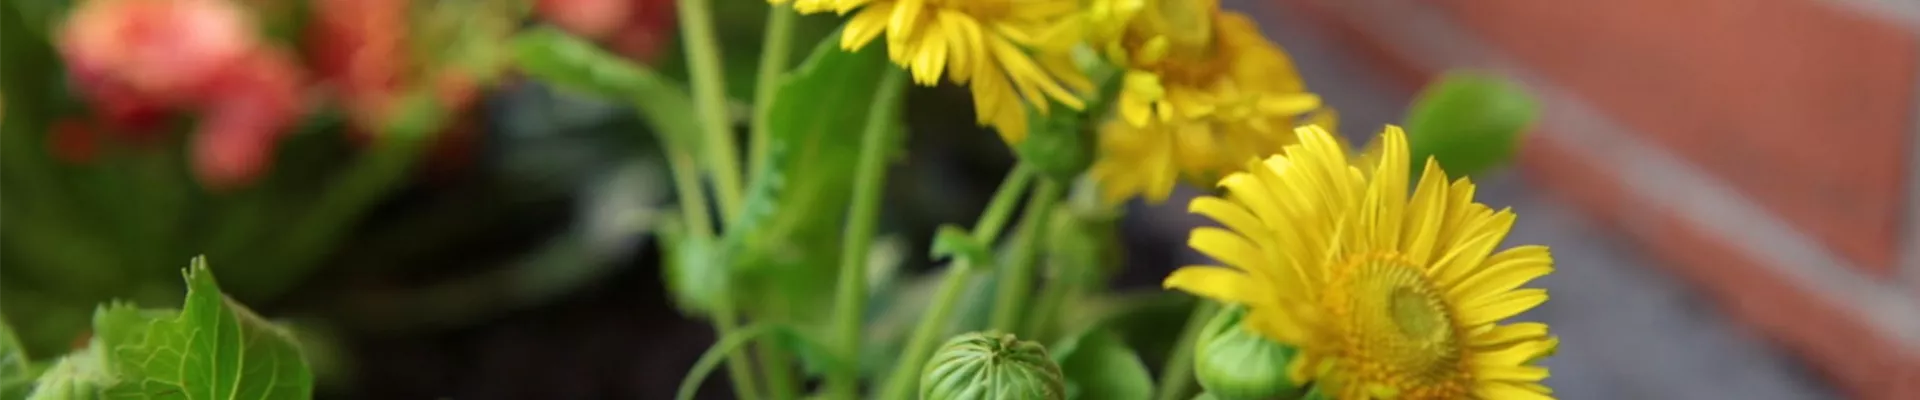 Gemswurz - Einpflanzen im Garten (Thumbnail)